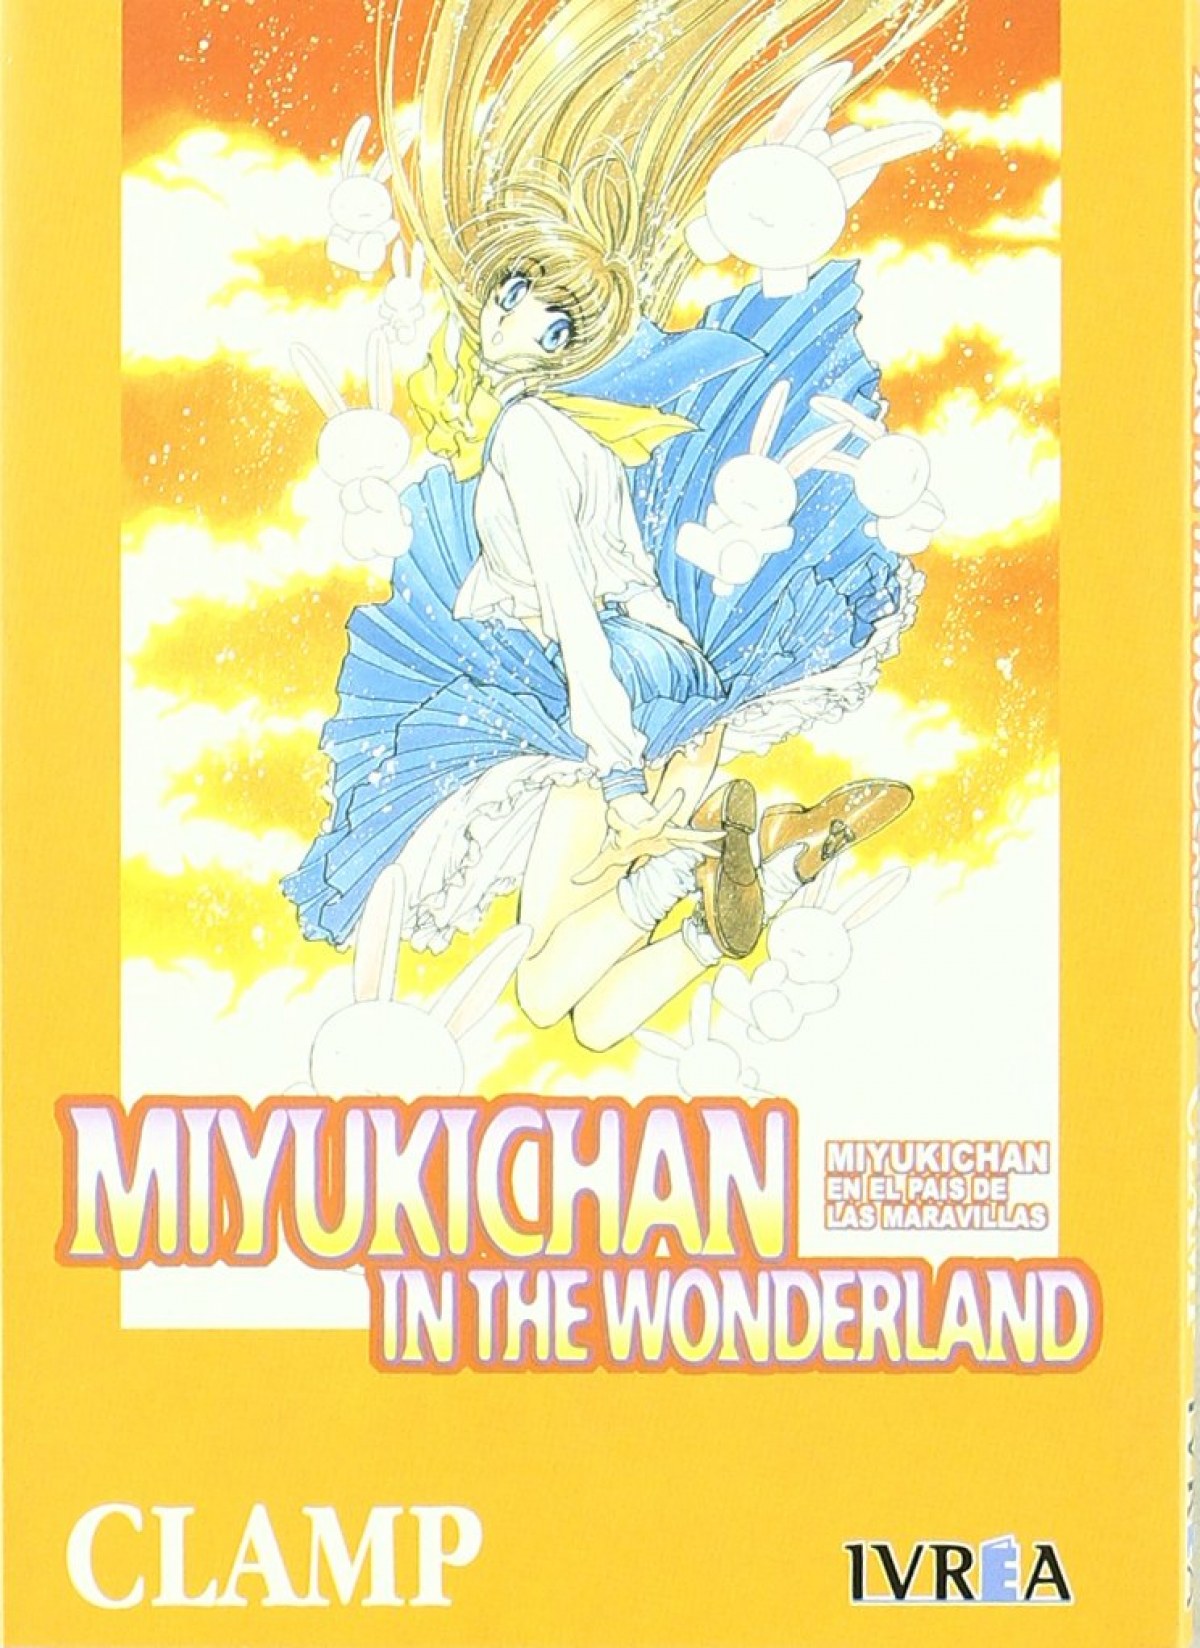 Miyukichan The Woderland - Clamp